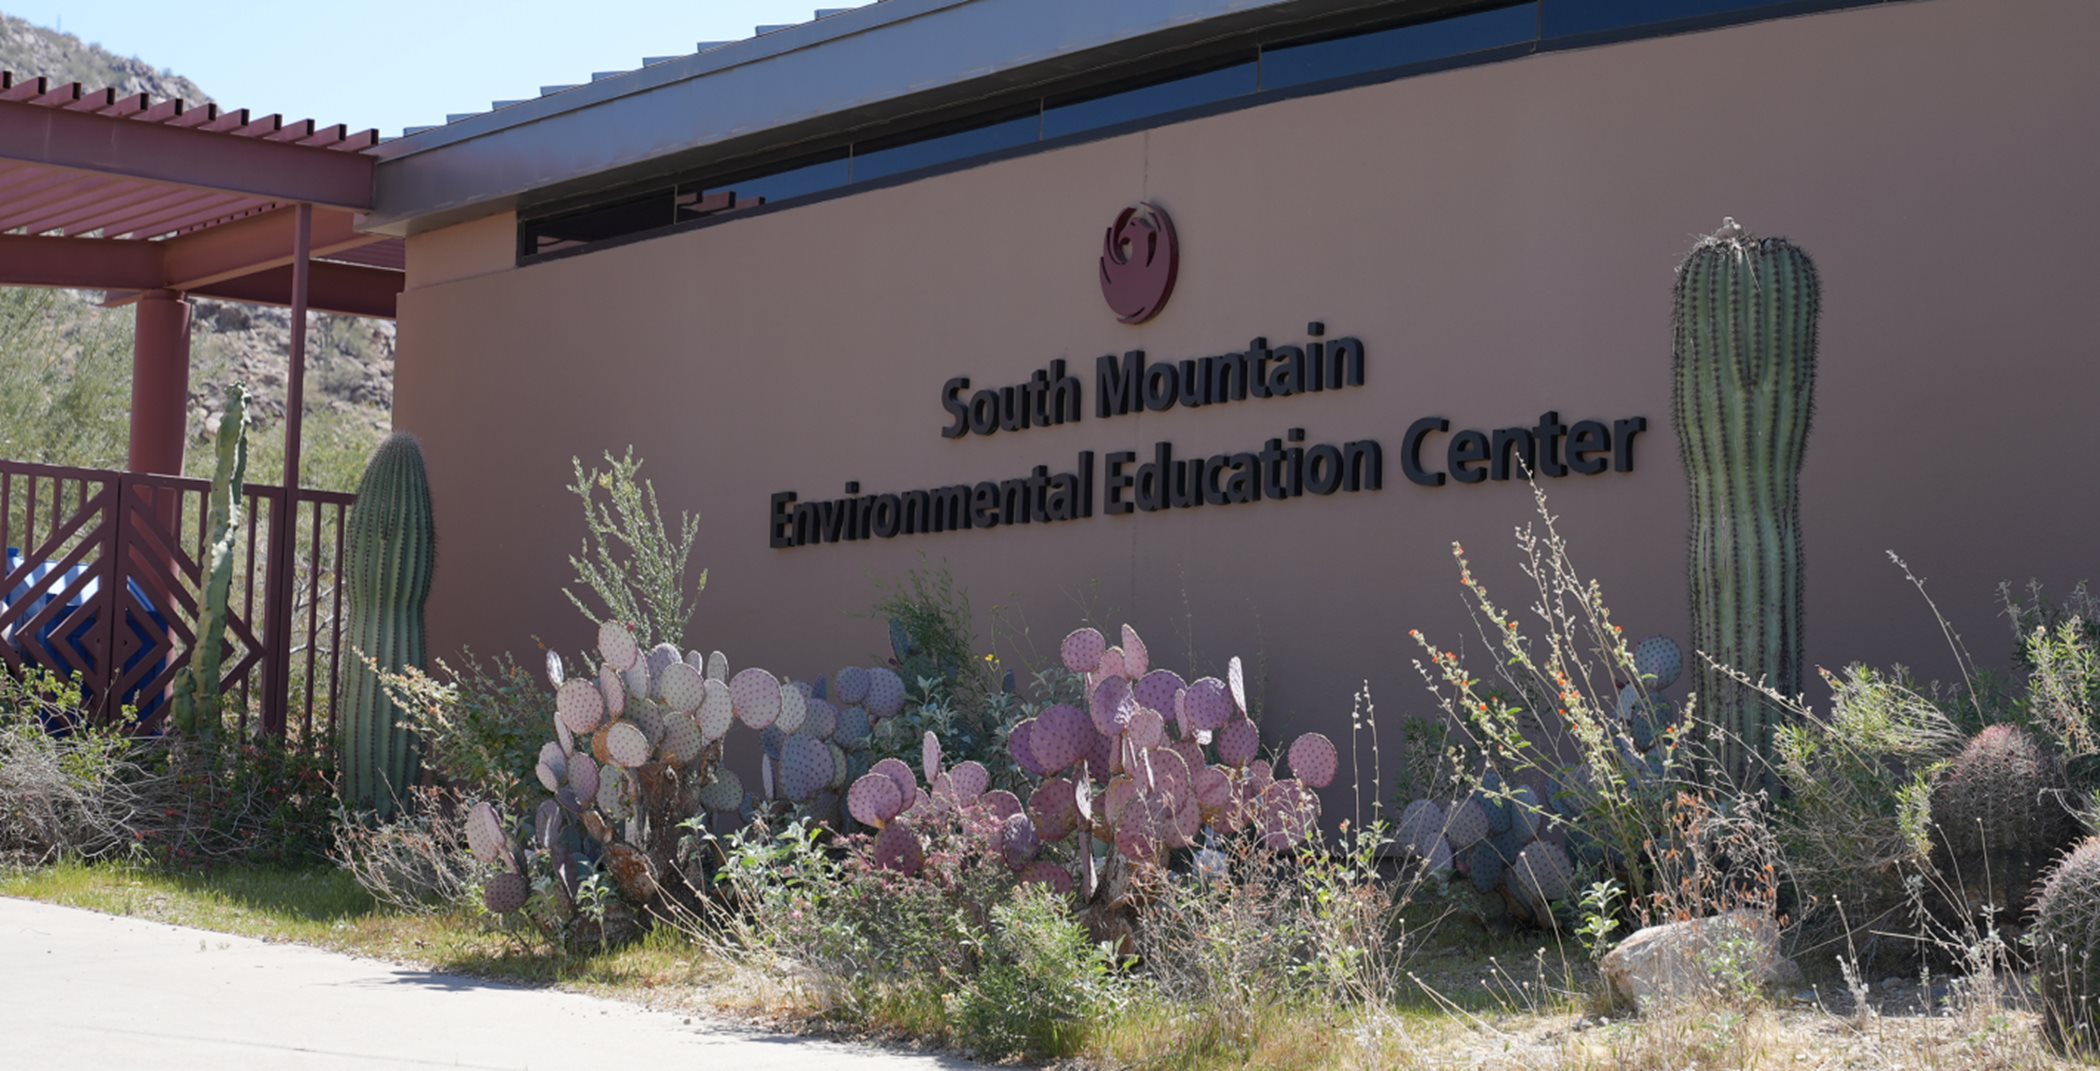 South Mountain Environmental Education Center building entrance with desert garden